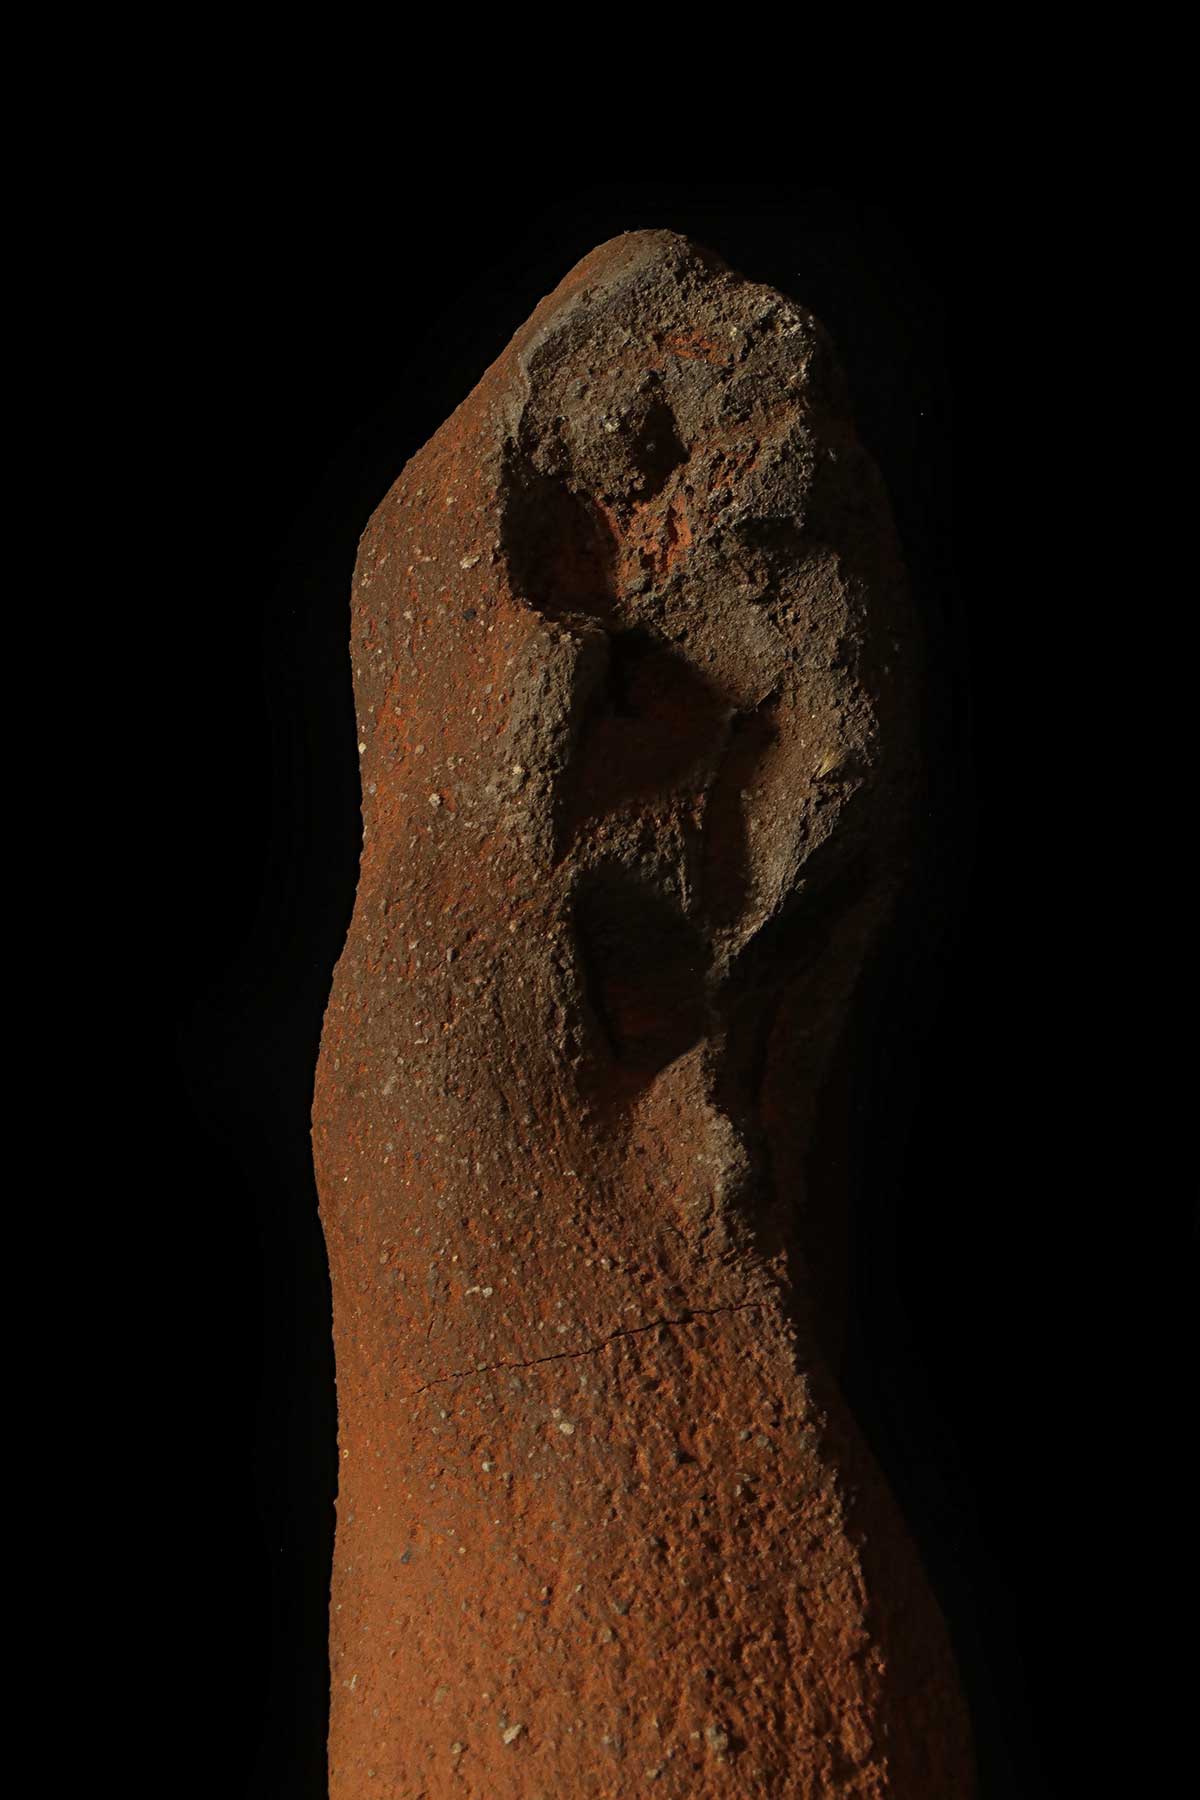 NP Réveillard, sculpture « Mère et Enfant… »∼ « Mother and Child… » (detail) // H: 37cm (H. base: 35cm). // Grès, cuisson bois (socle: grès, oxydes métalliques, sigillée)∼ Stoneware, wood kiln (base: stoneware, metal oxides, sigillated) // 2018/2020